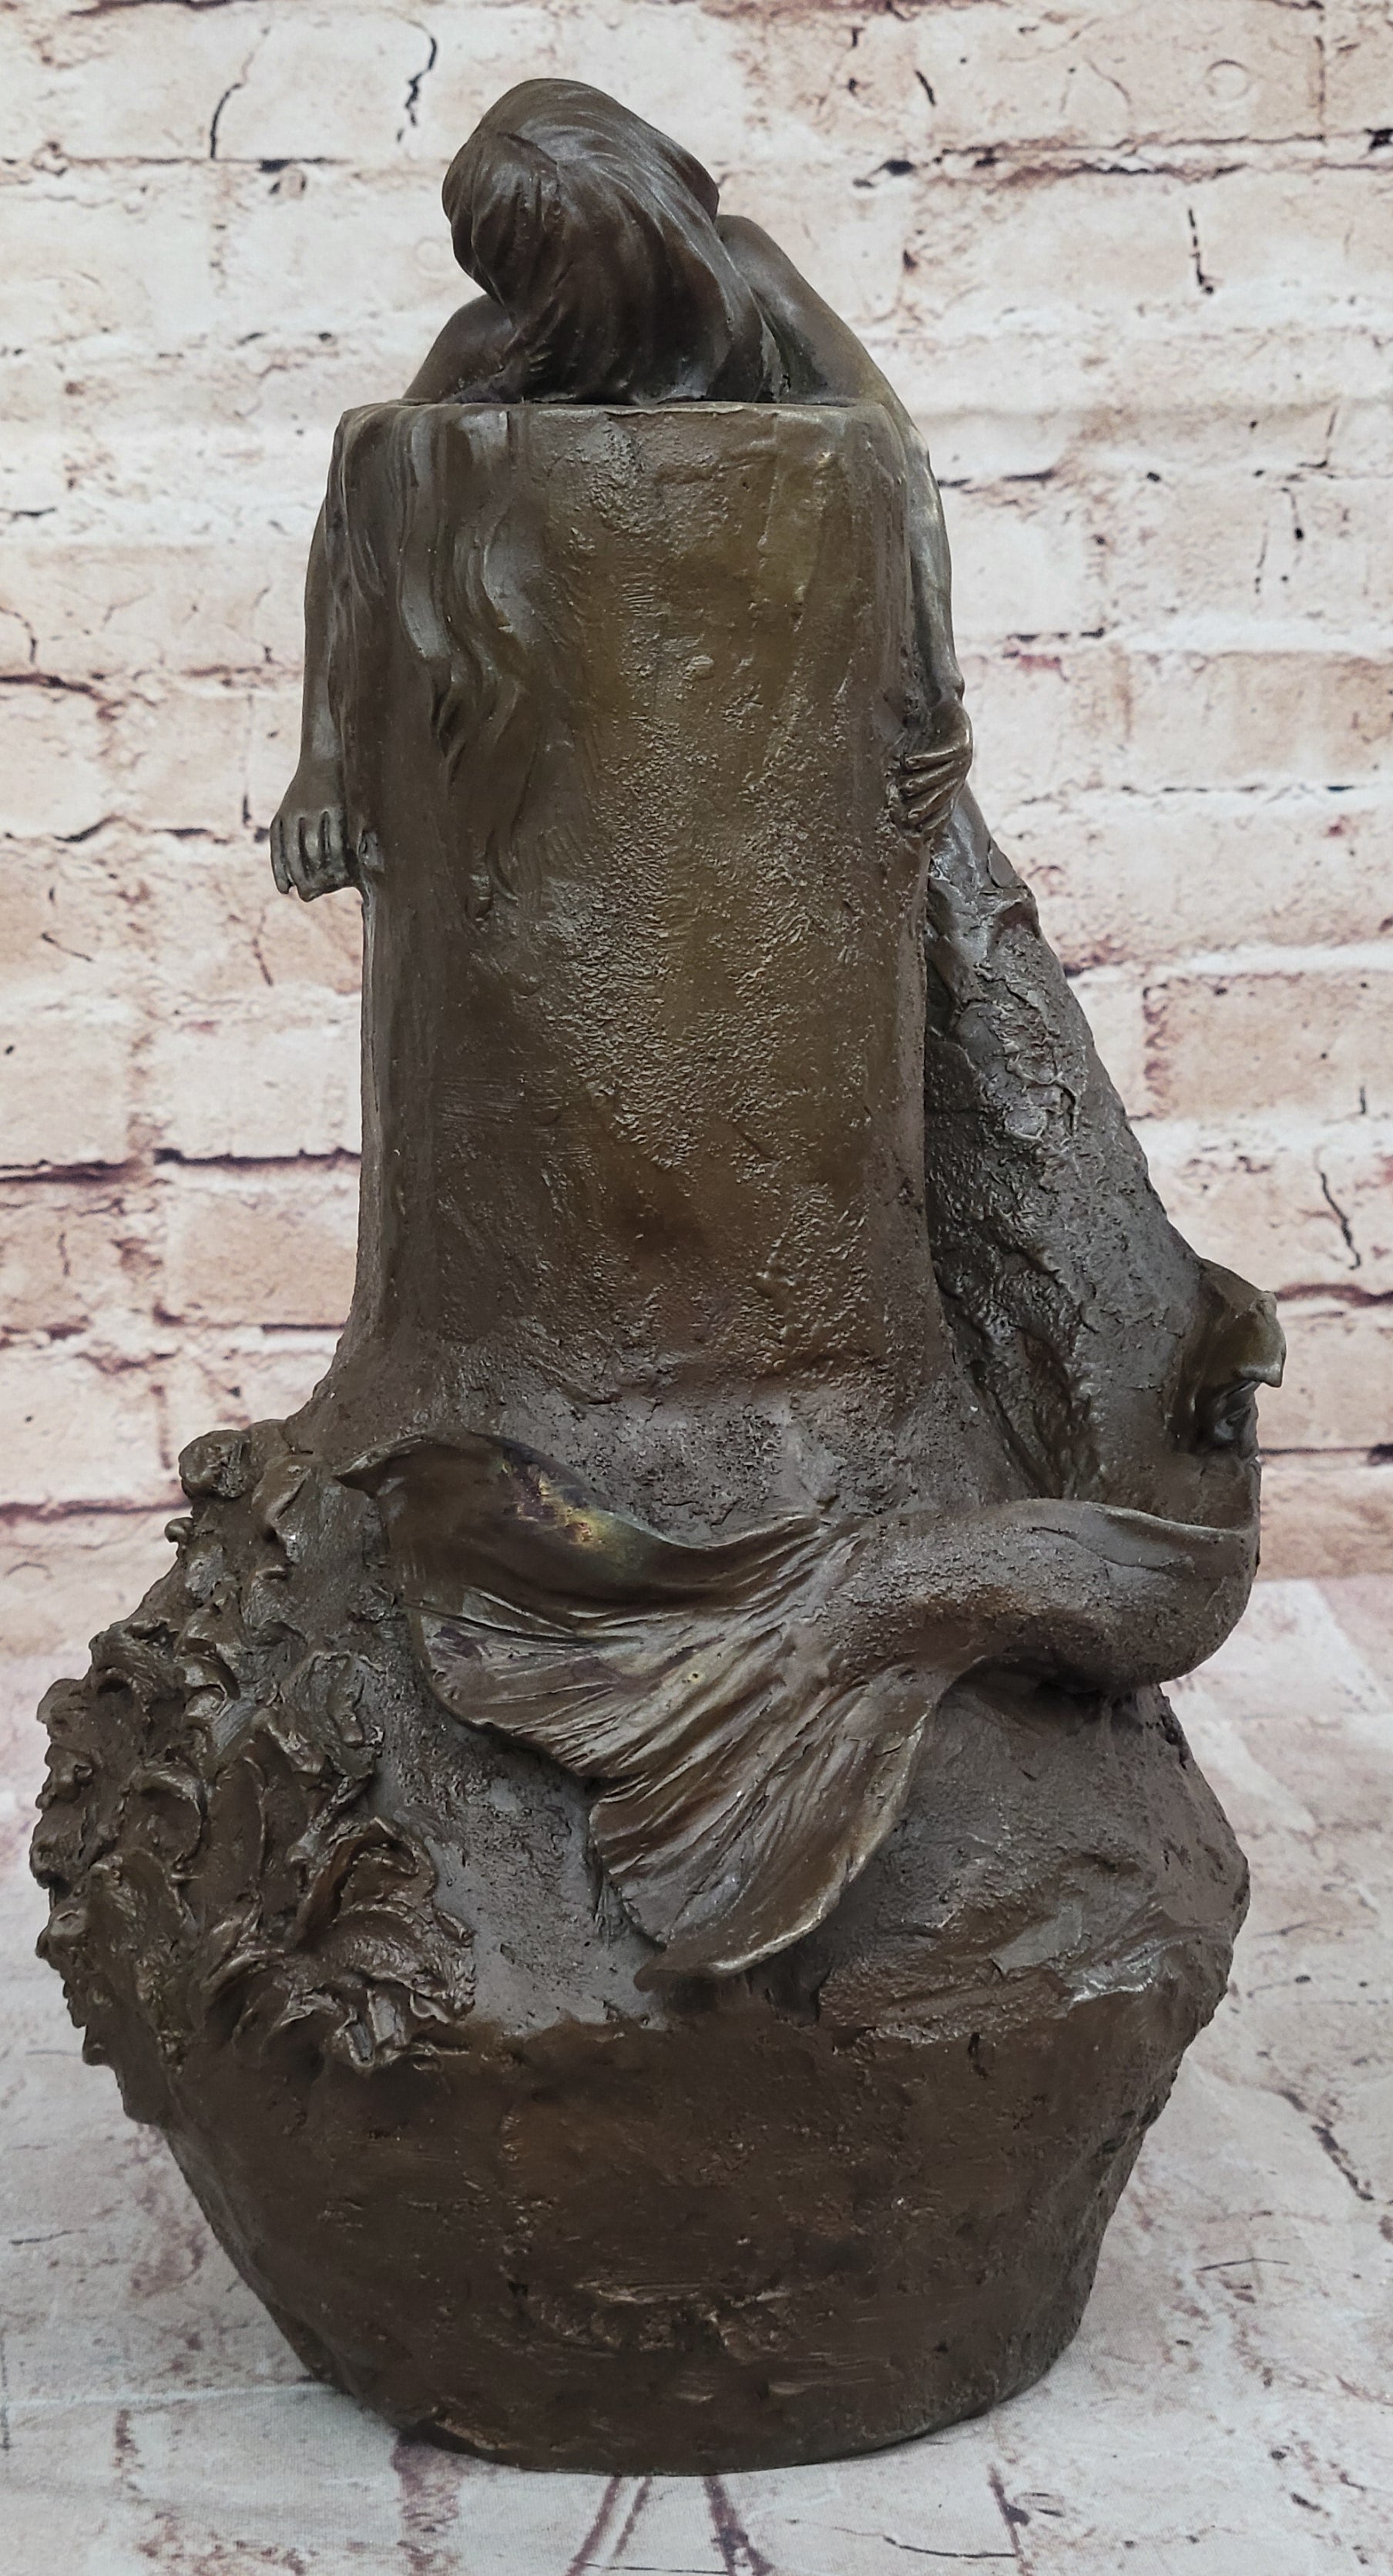 Handcrafted bronze sculpture SALE Merm Vitaleh Aldo Nouveau Art Original Signed